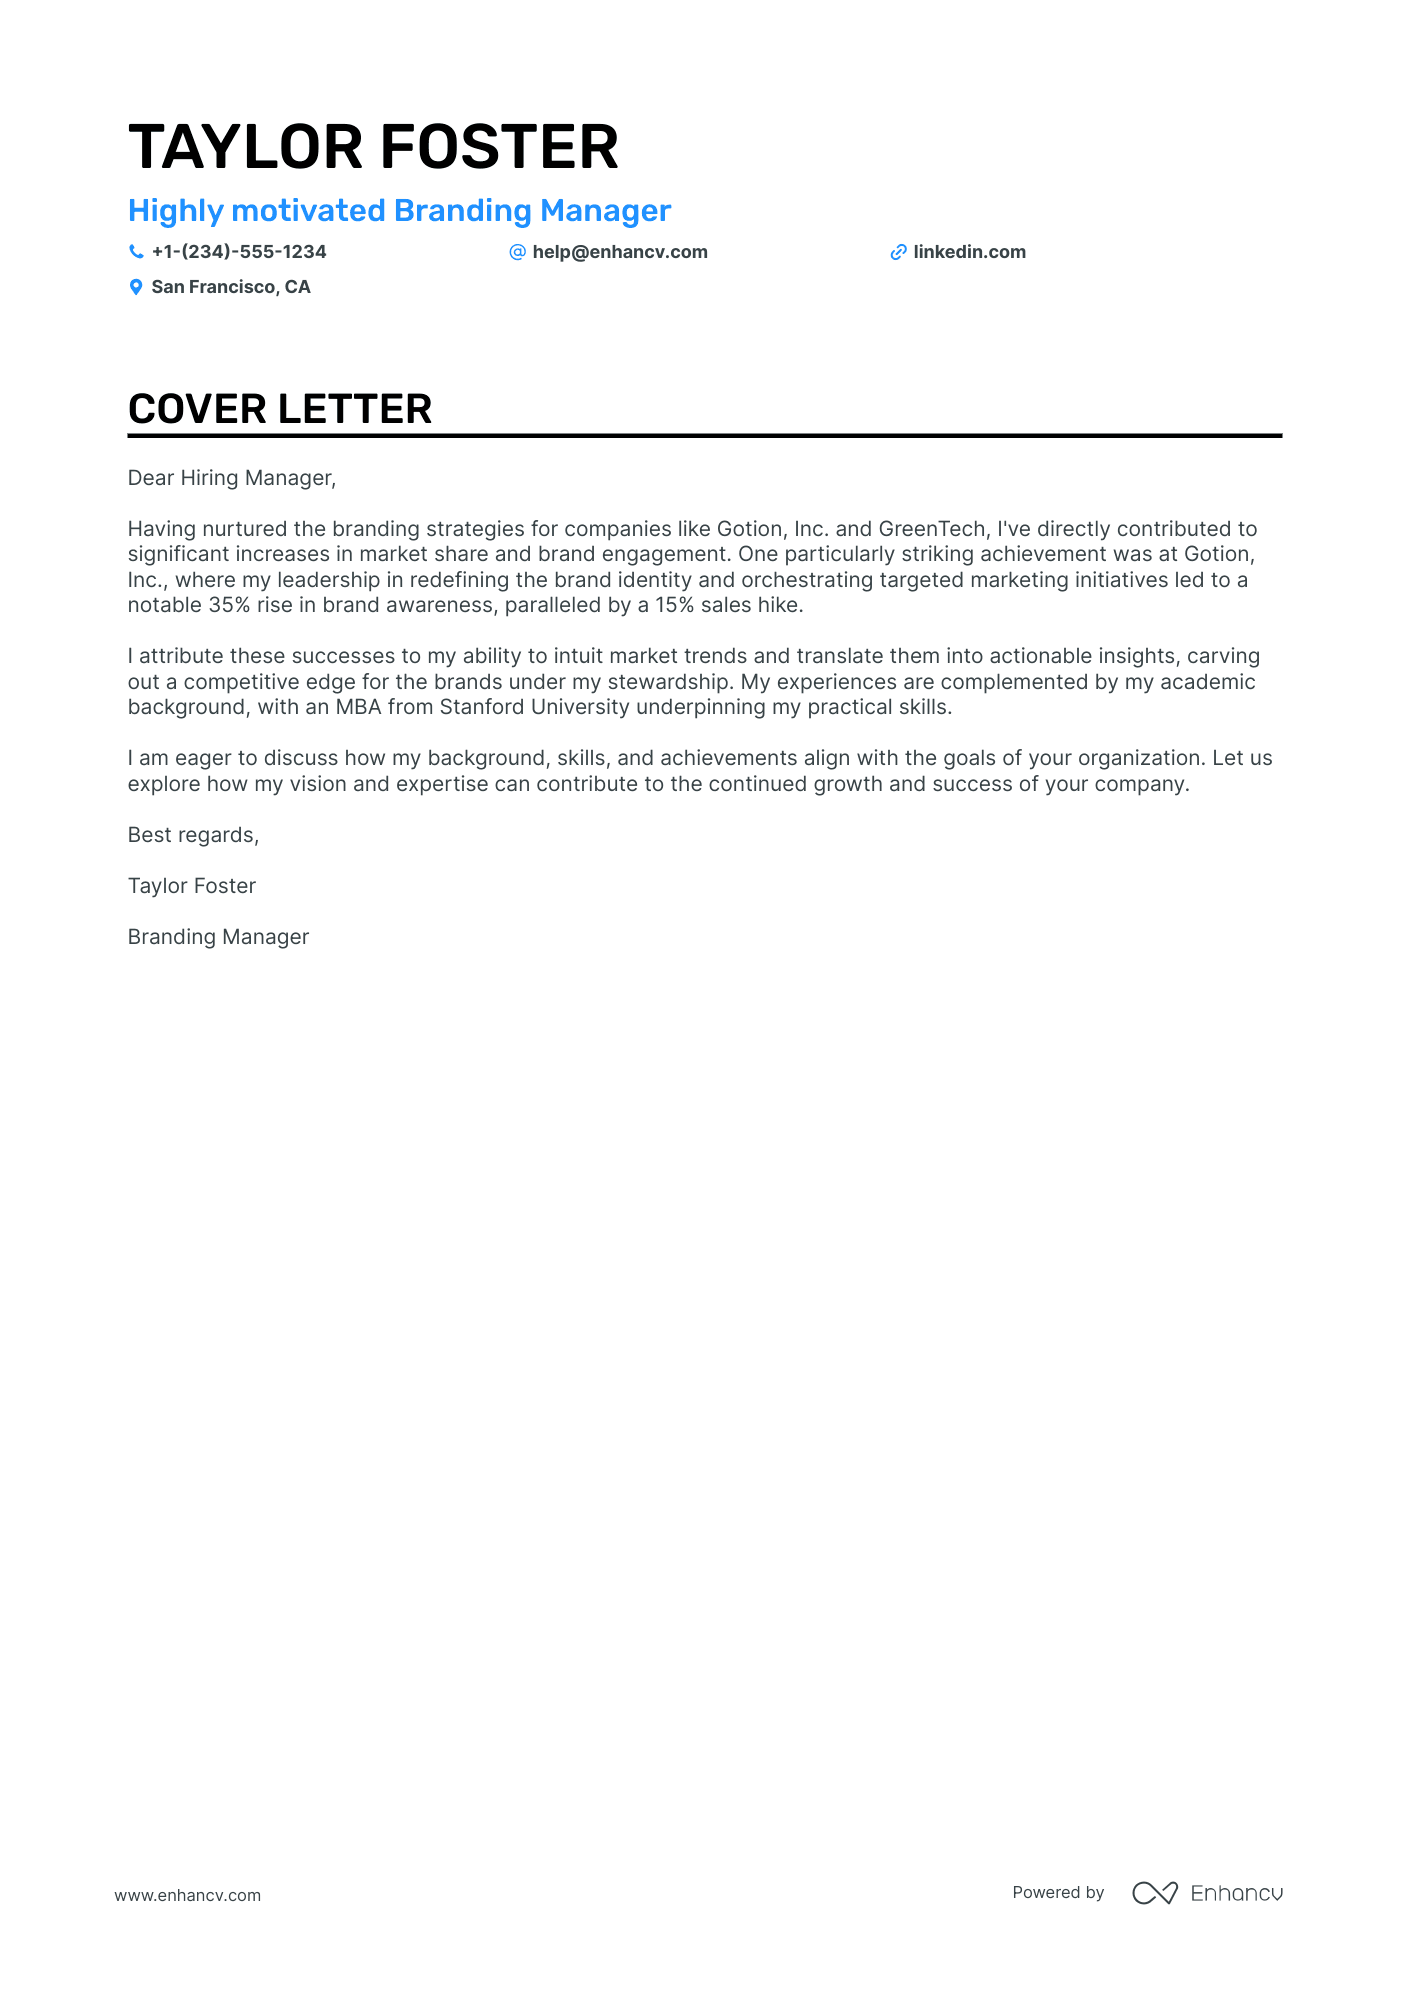 Branding Manager cover letter